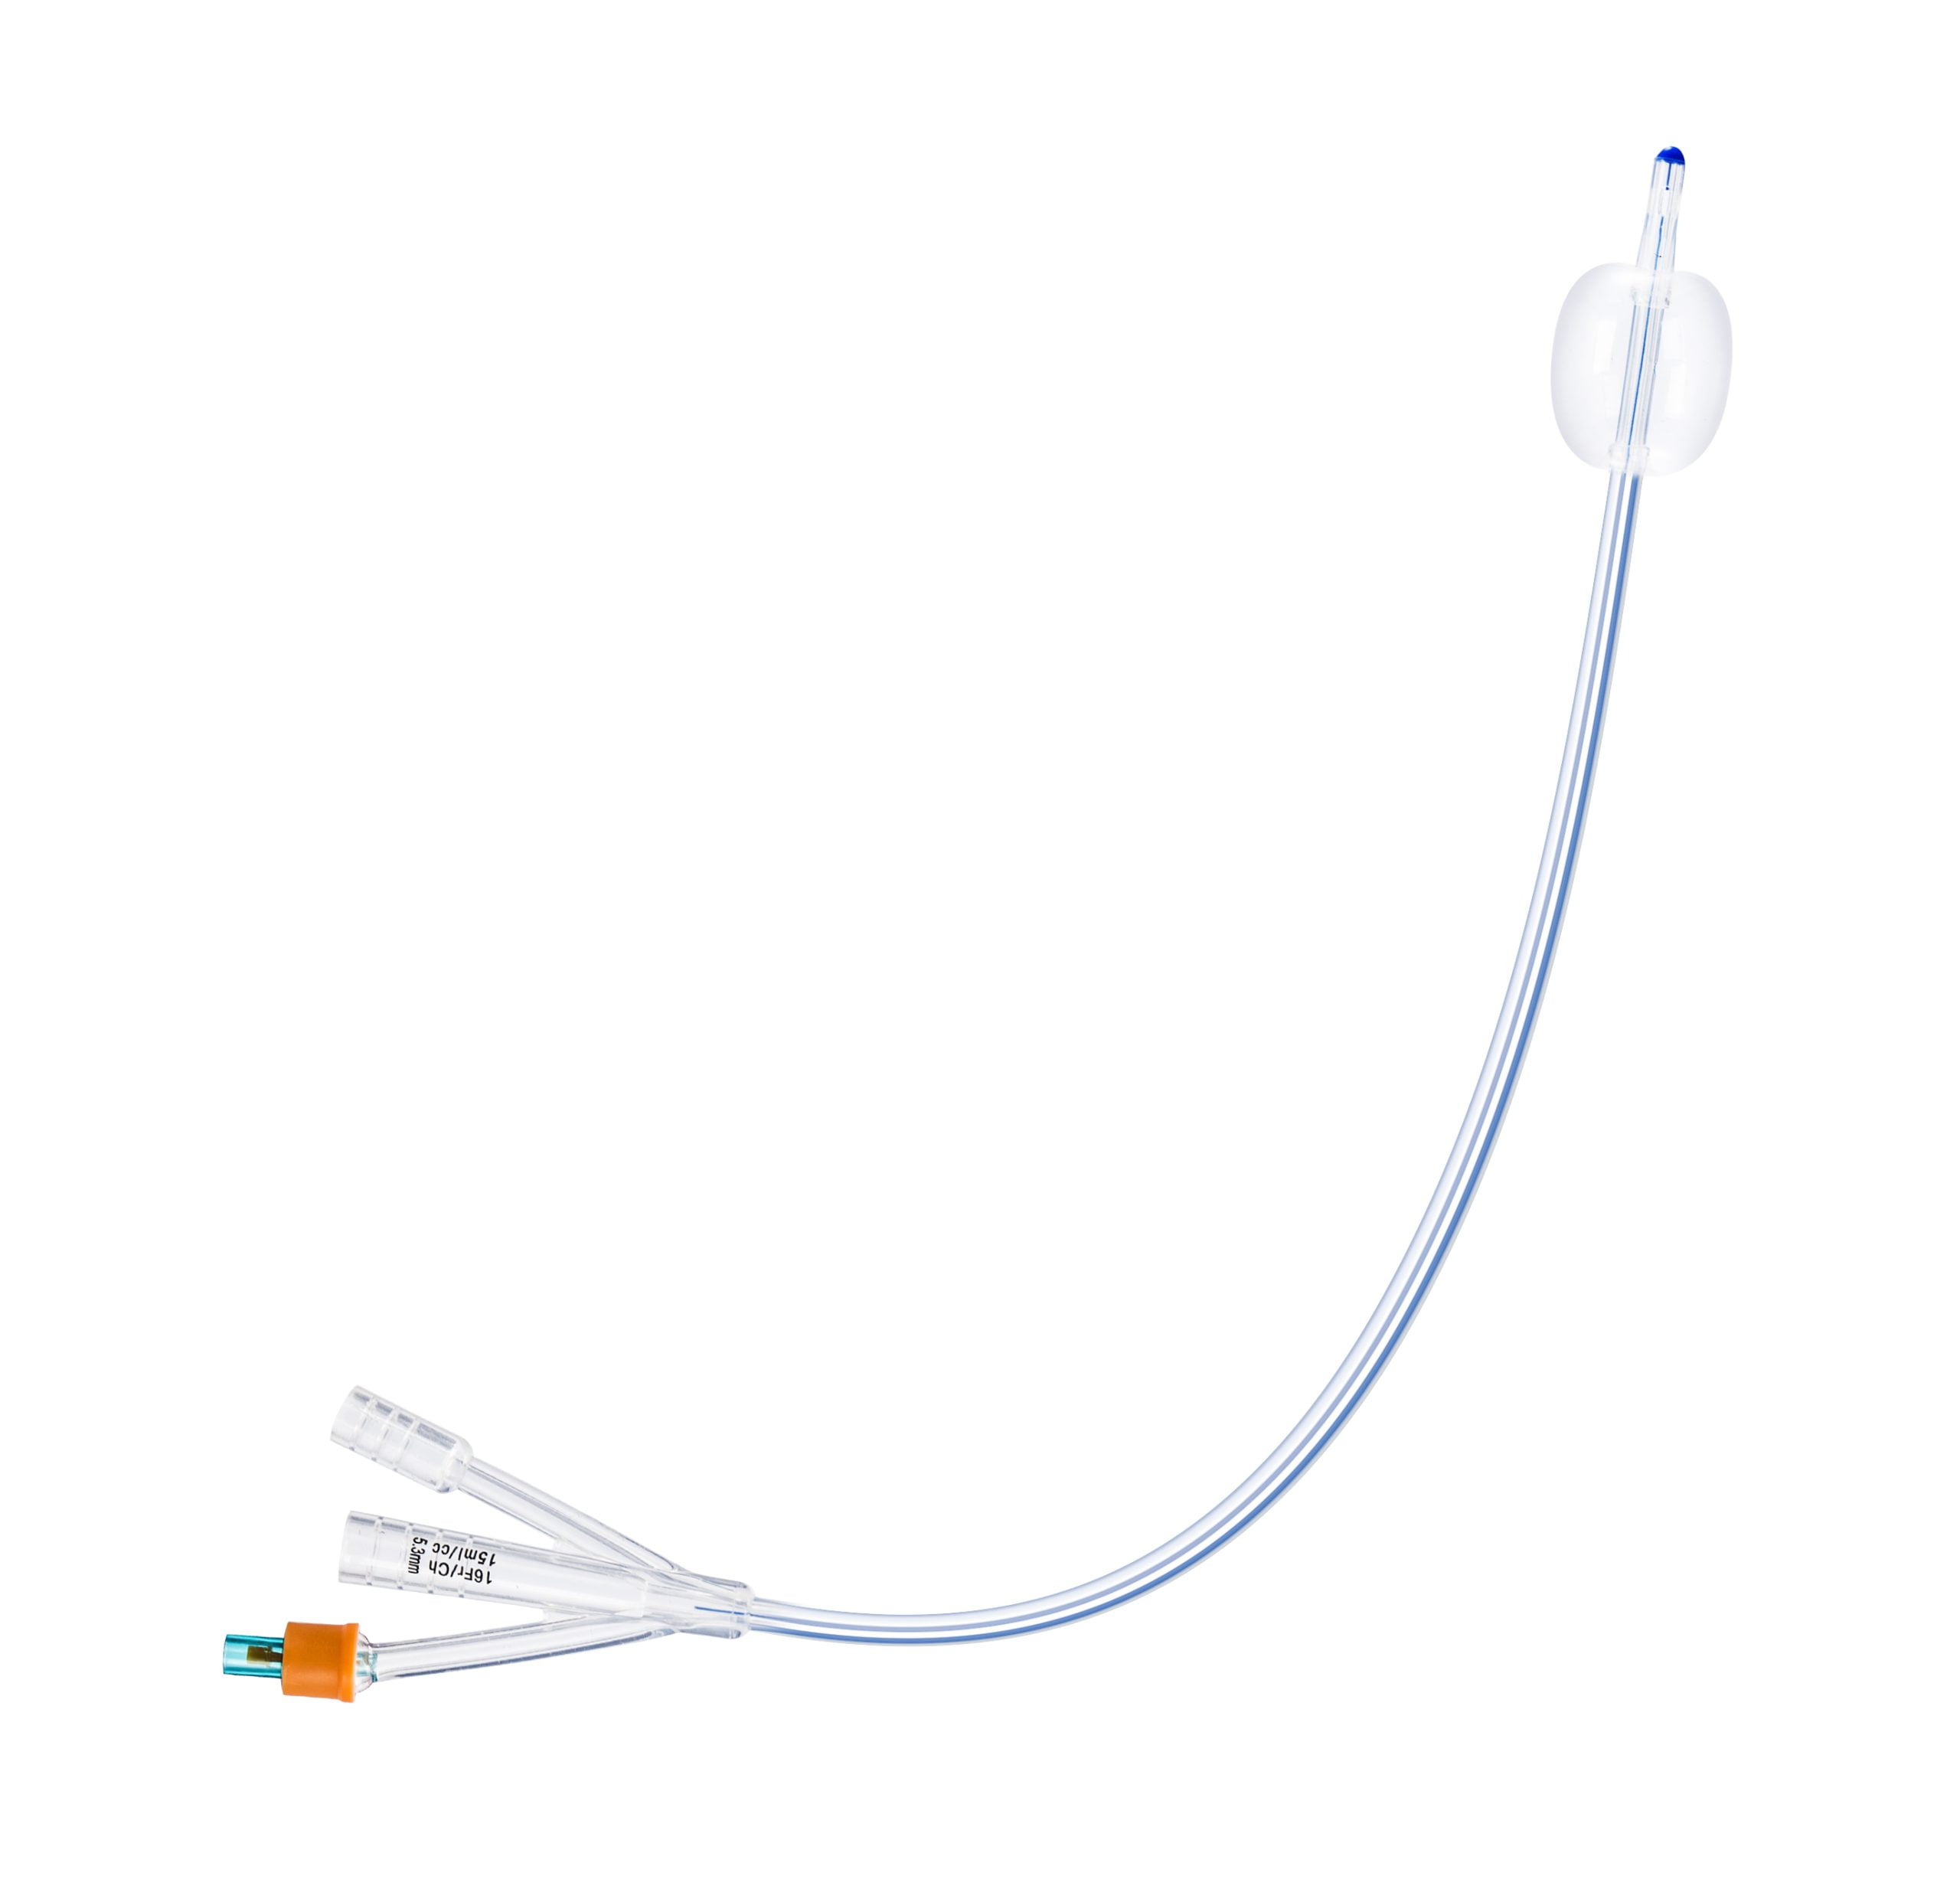 Silicone foley catheter 3 way